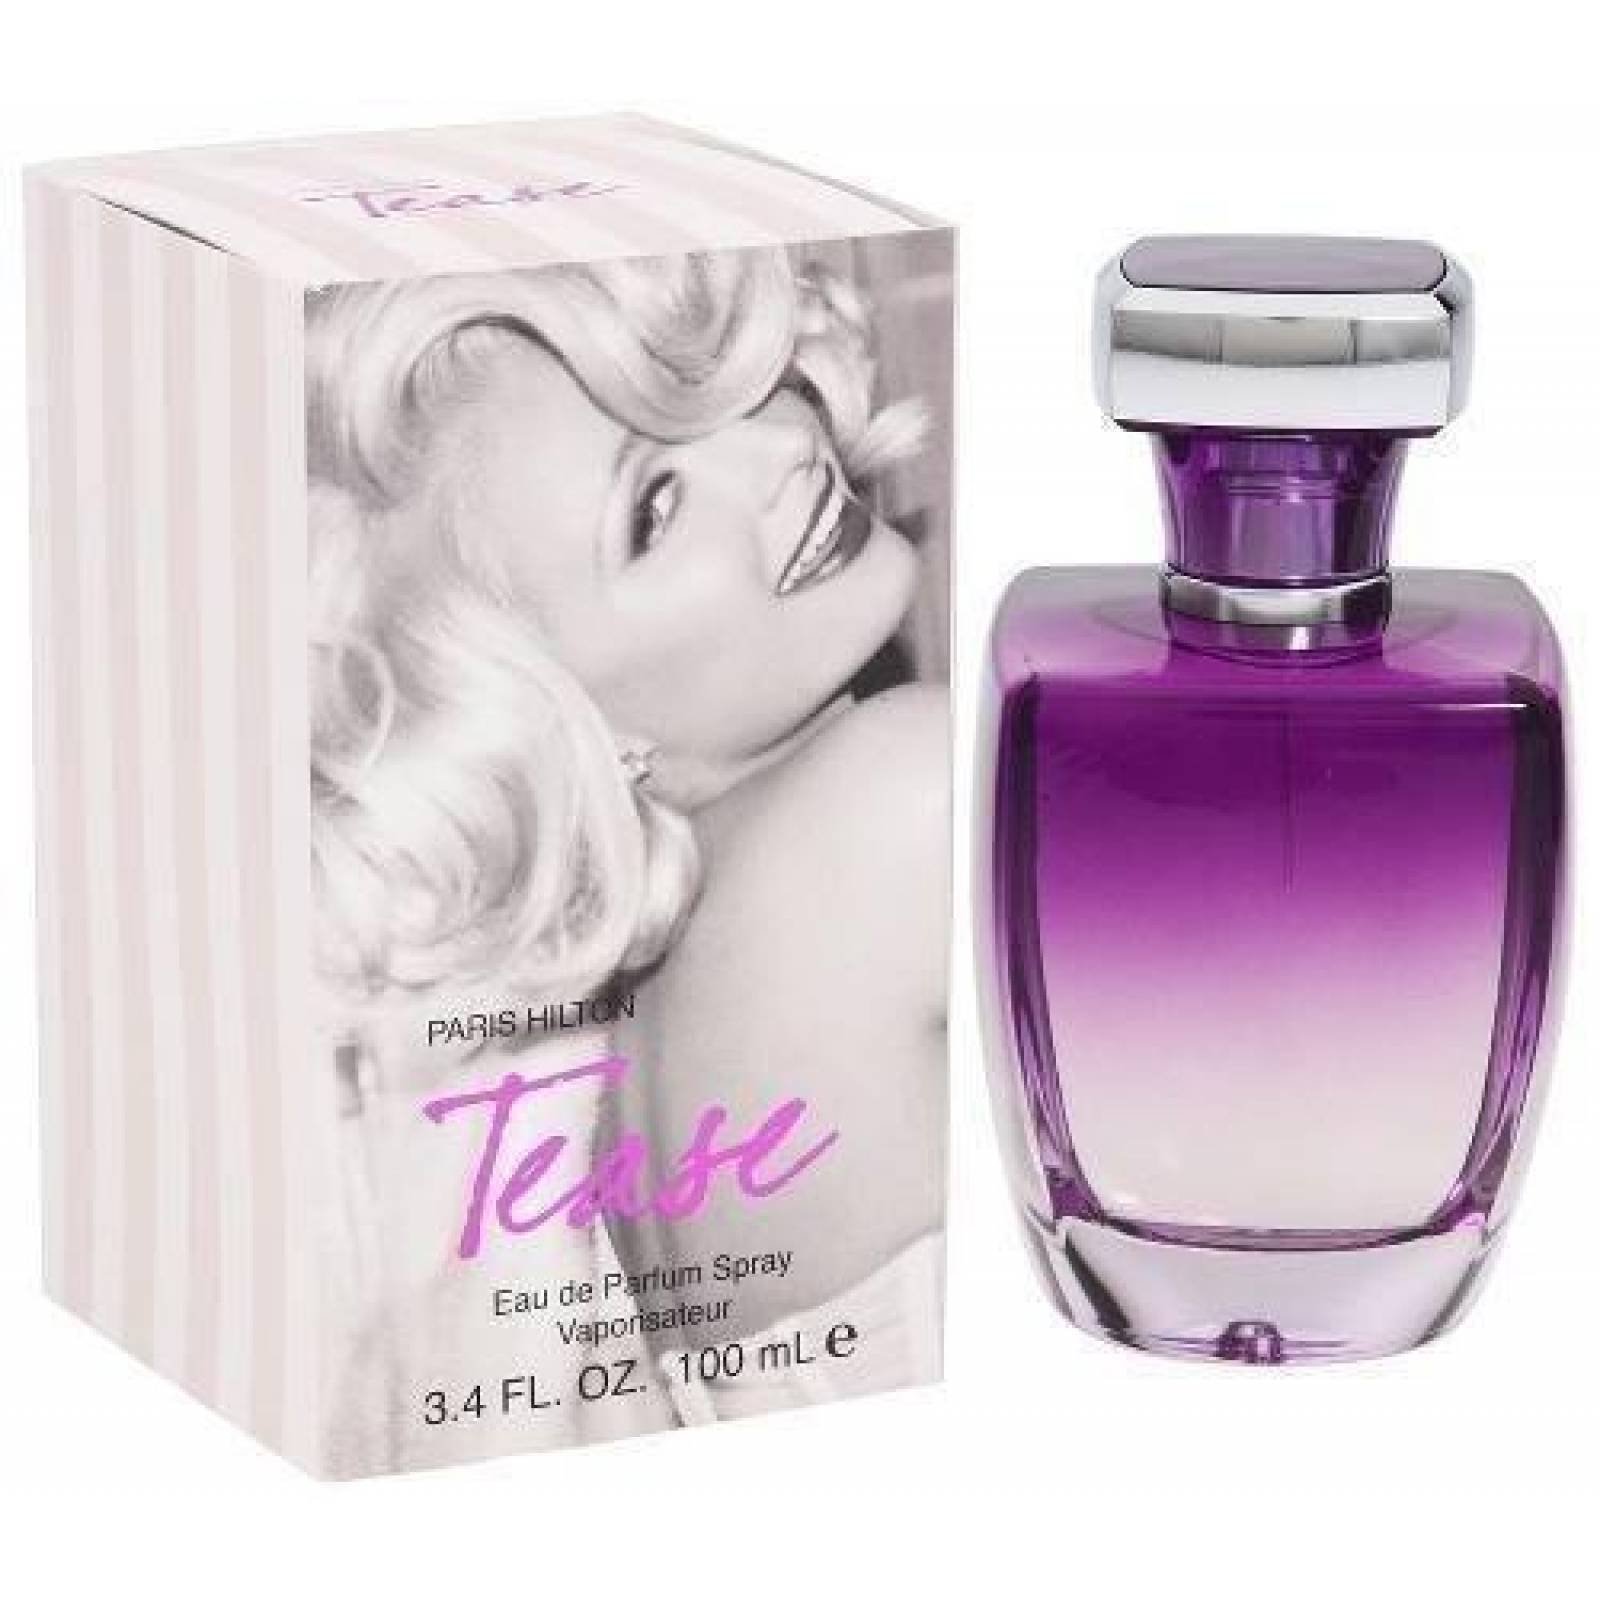 Tease Dama 100 Ml Paris Hilton Edp Spray - Perfume Original